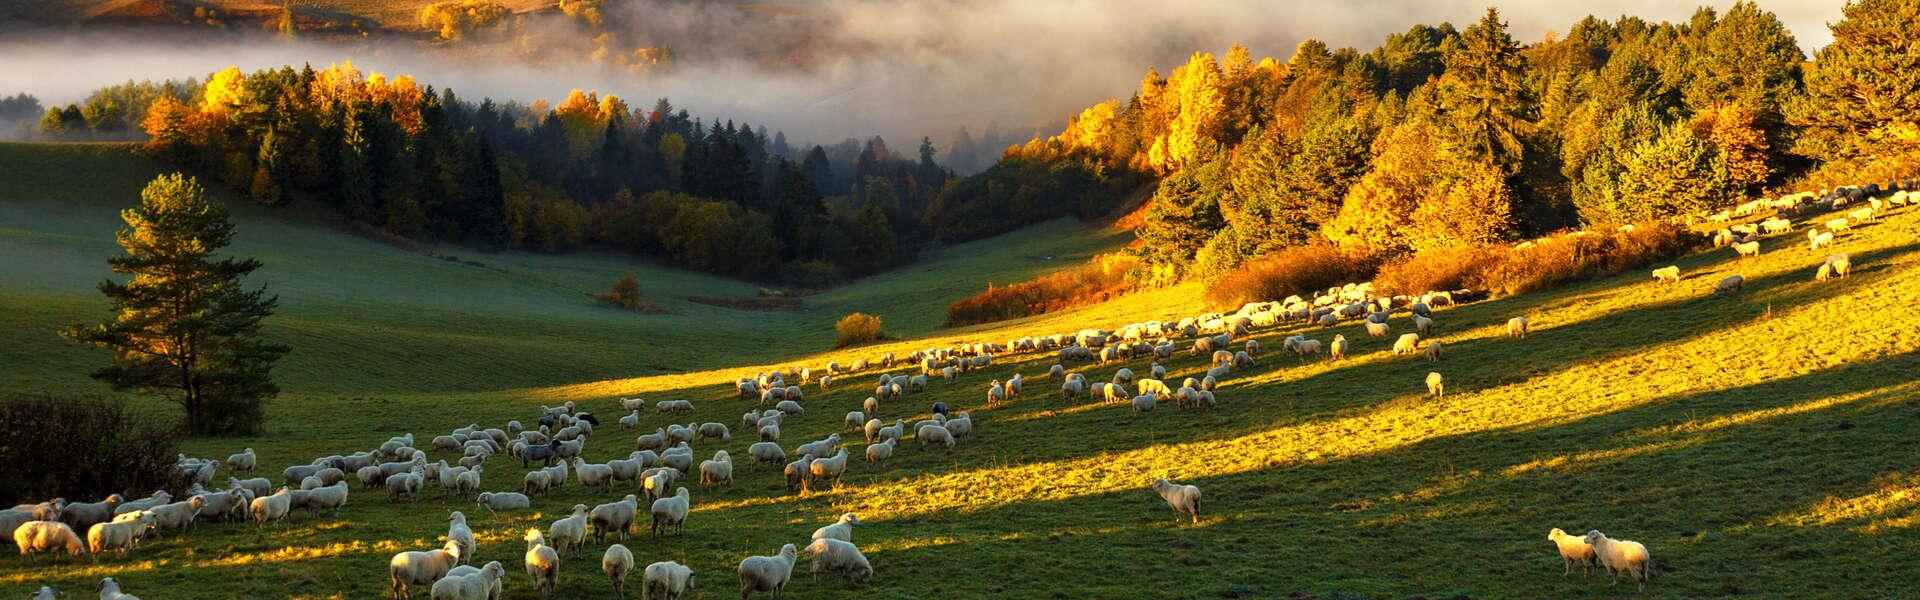 Pasące się na łące owce. Po prawej drzewa. W tle mgła i wystające wierzchołki góry nad nią.